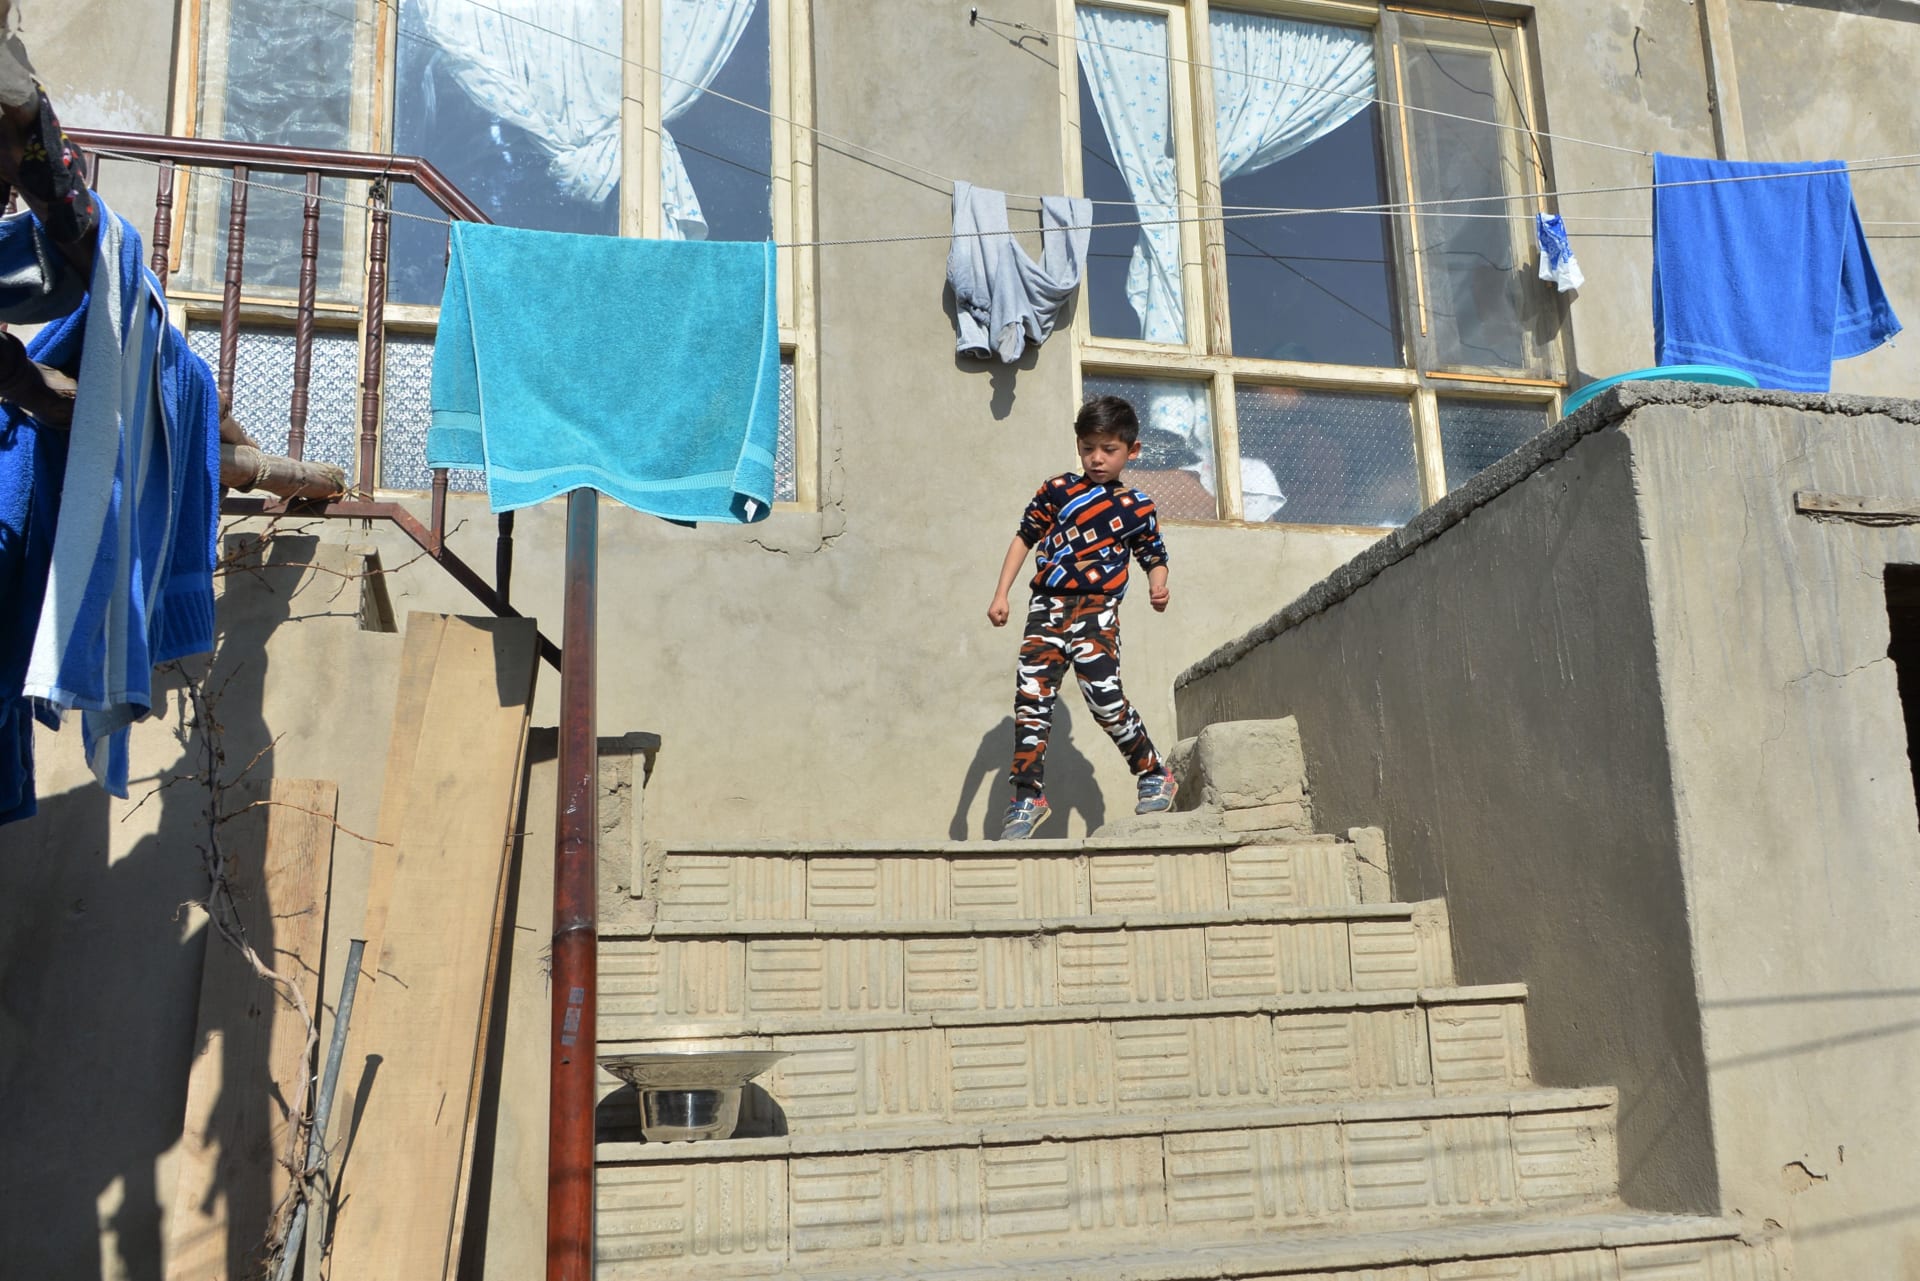 بعدما هرب من طالبان..هكذا يعيش "الطفل ميسي" بأفغانستان